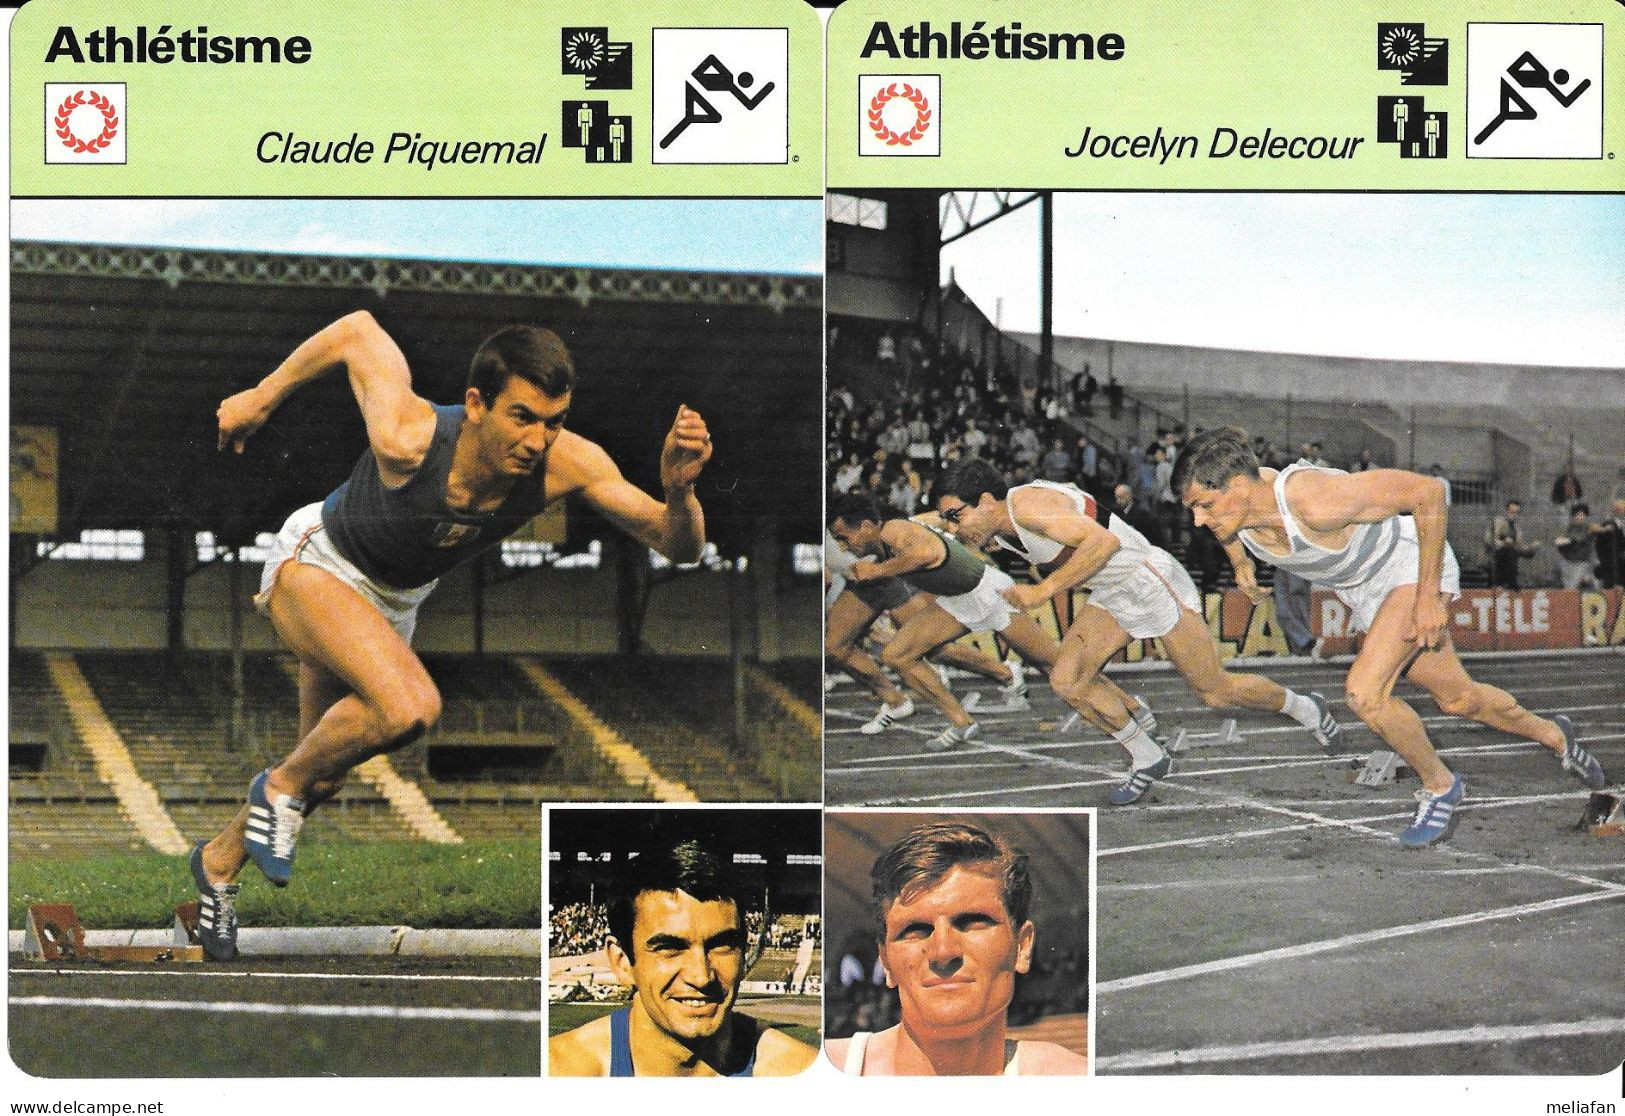 GF2044 - FICHES EDITION RENCONTRE - RAELENE BOYLE - DON BRAGG - CLAUDE PIQUEMAL - JOCELYN DELECOUR - Athlétisme